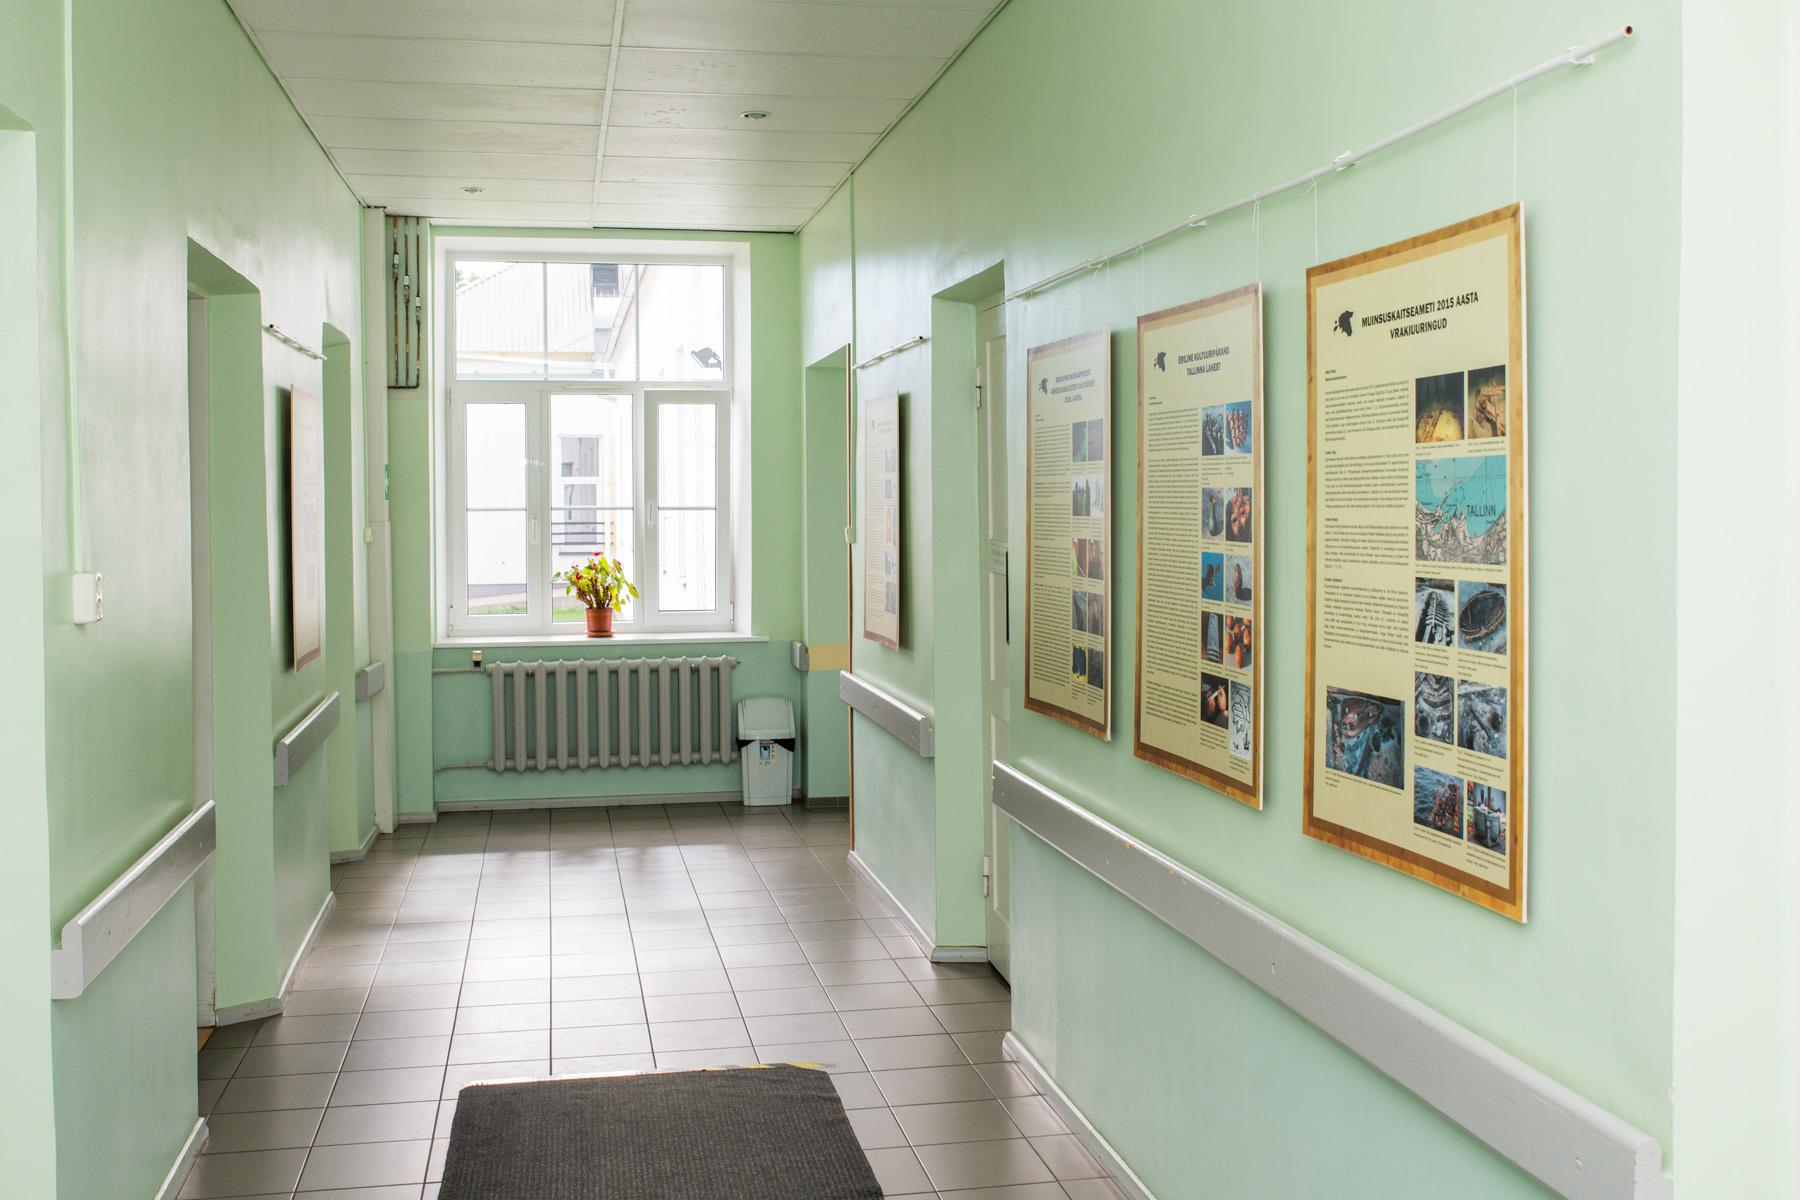 20160627-Kardla-592.jpg - 27. juuni 2016. Näituse "Arheoloogilised välitööd Eestis 2015" avamine Hiiumaa haiglas